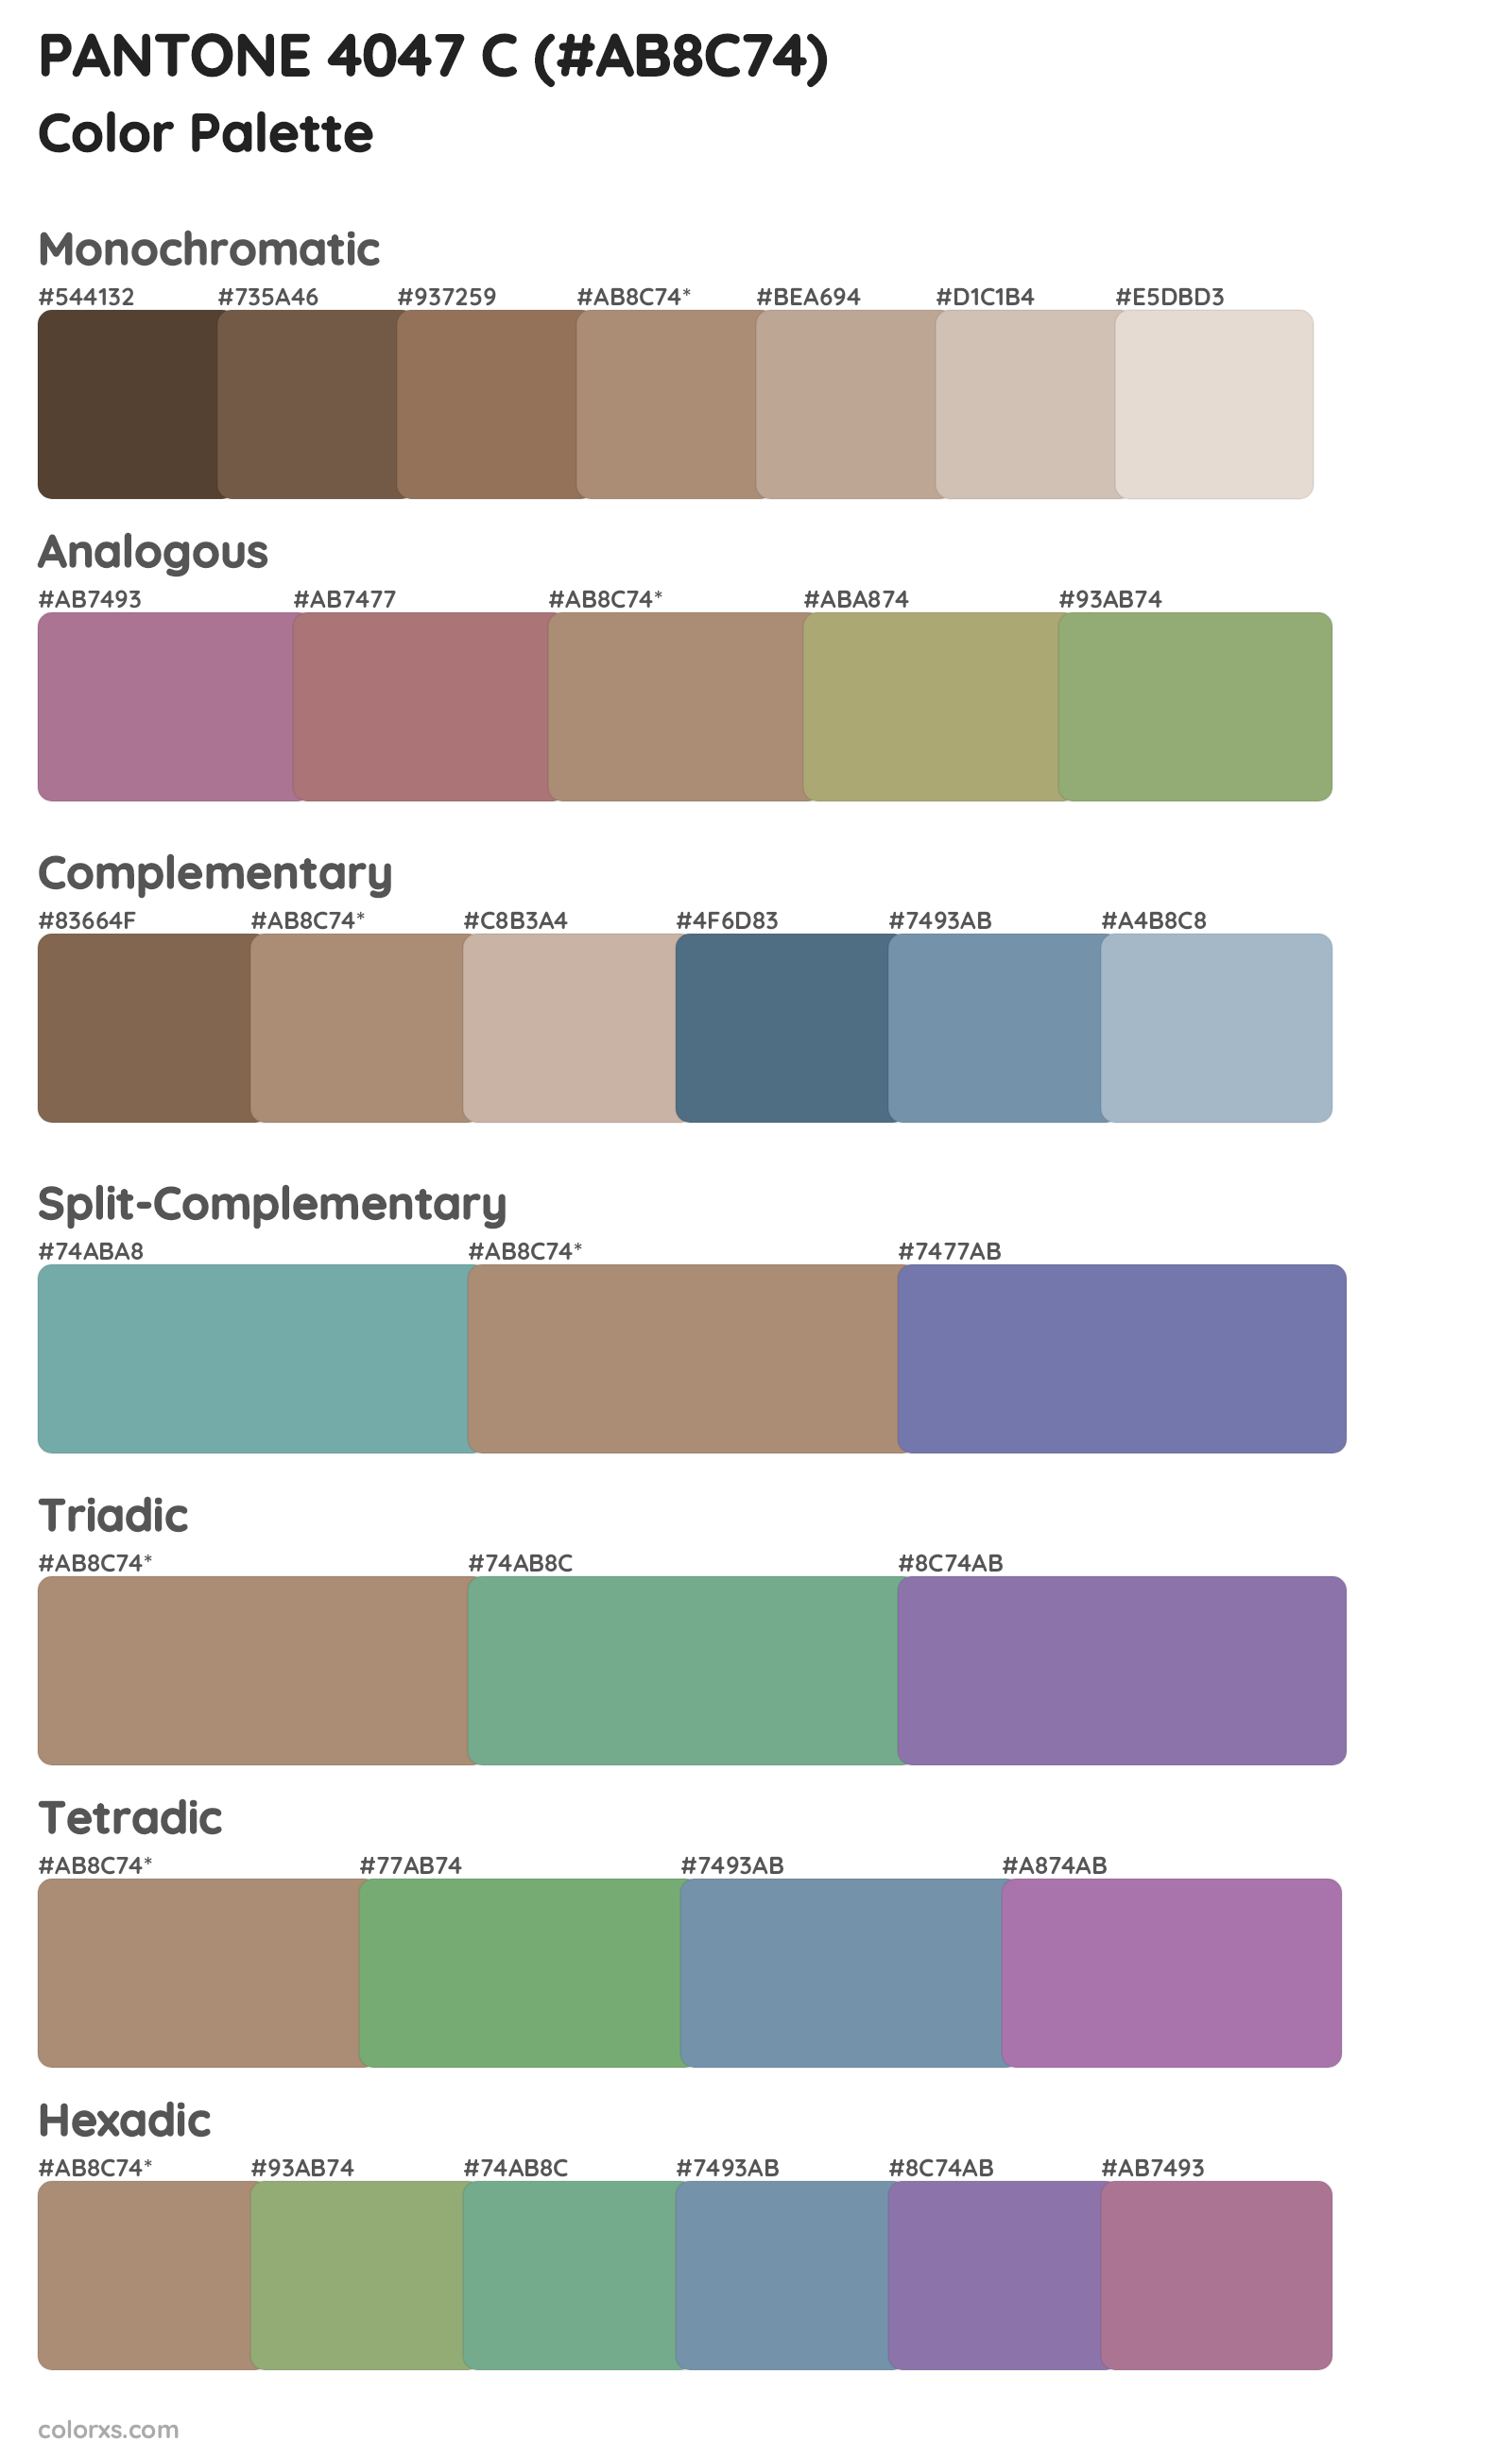 PANTONE 4047 C Color Scheme Palettes